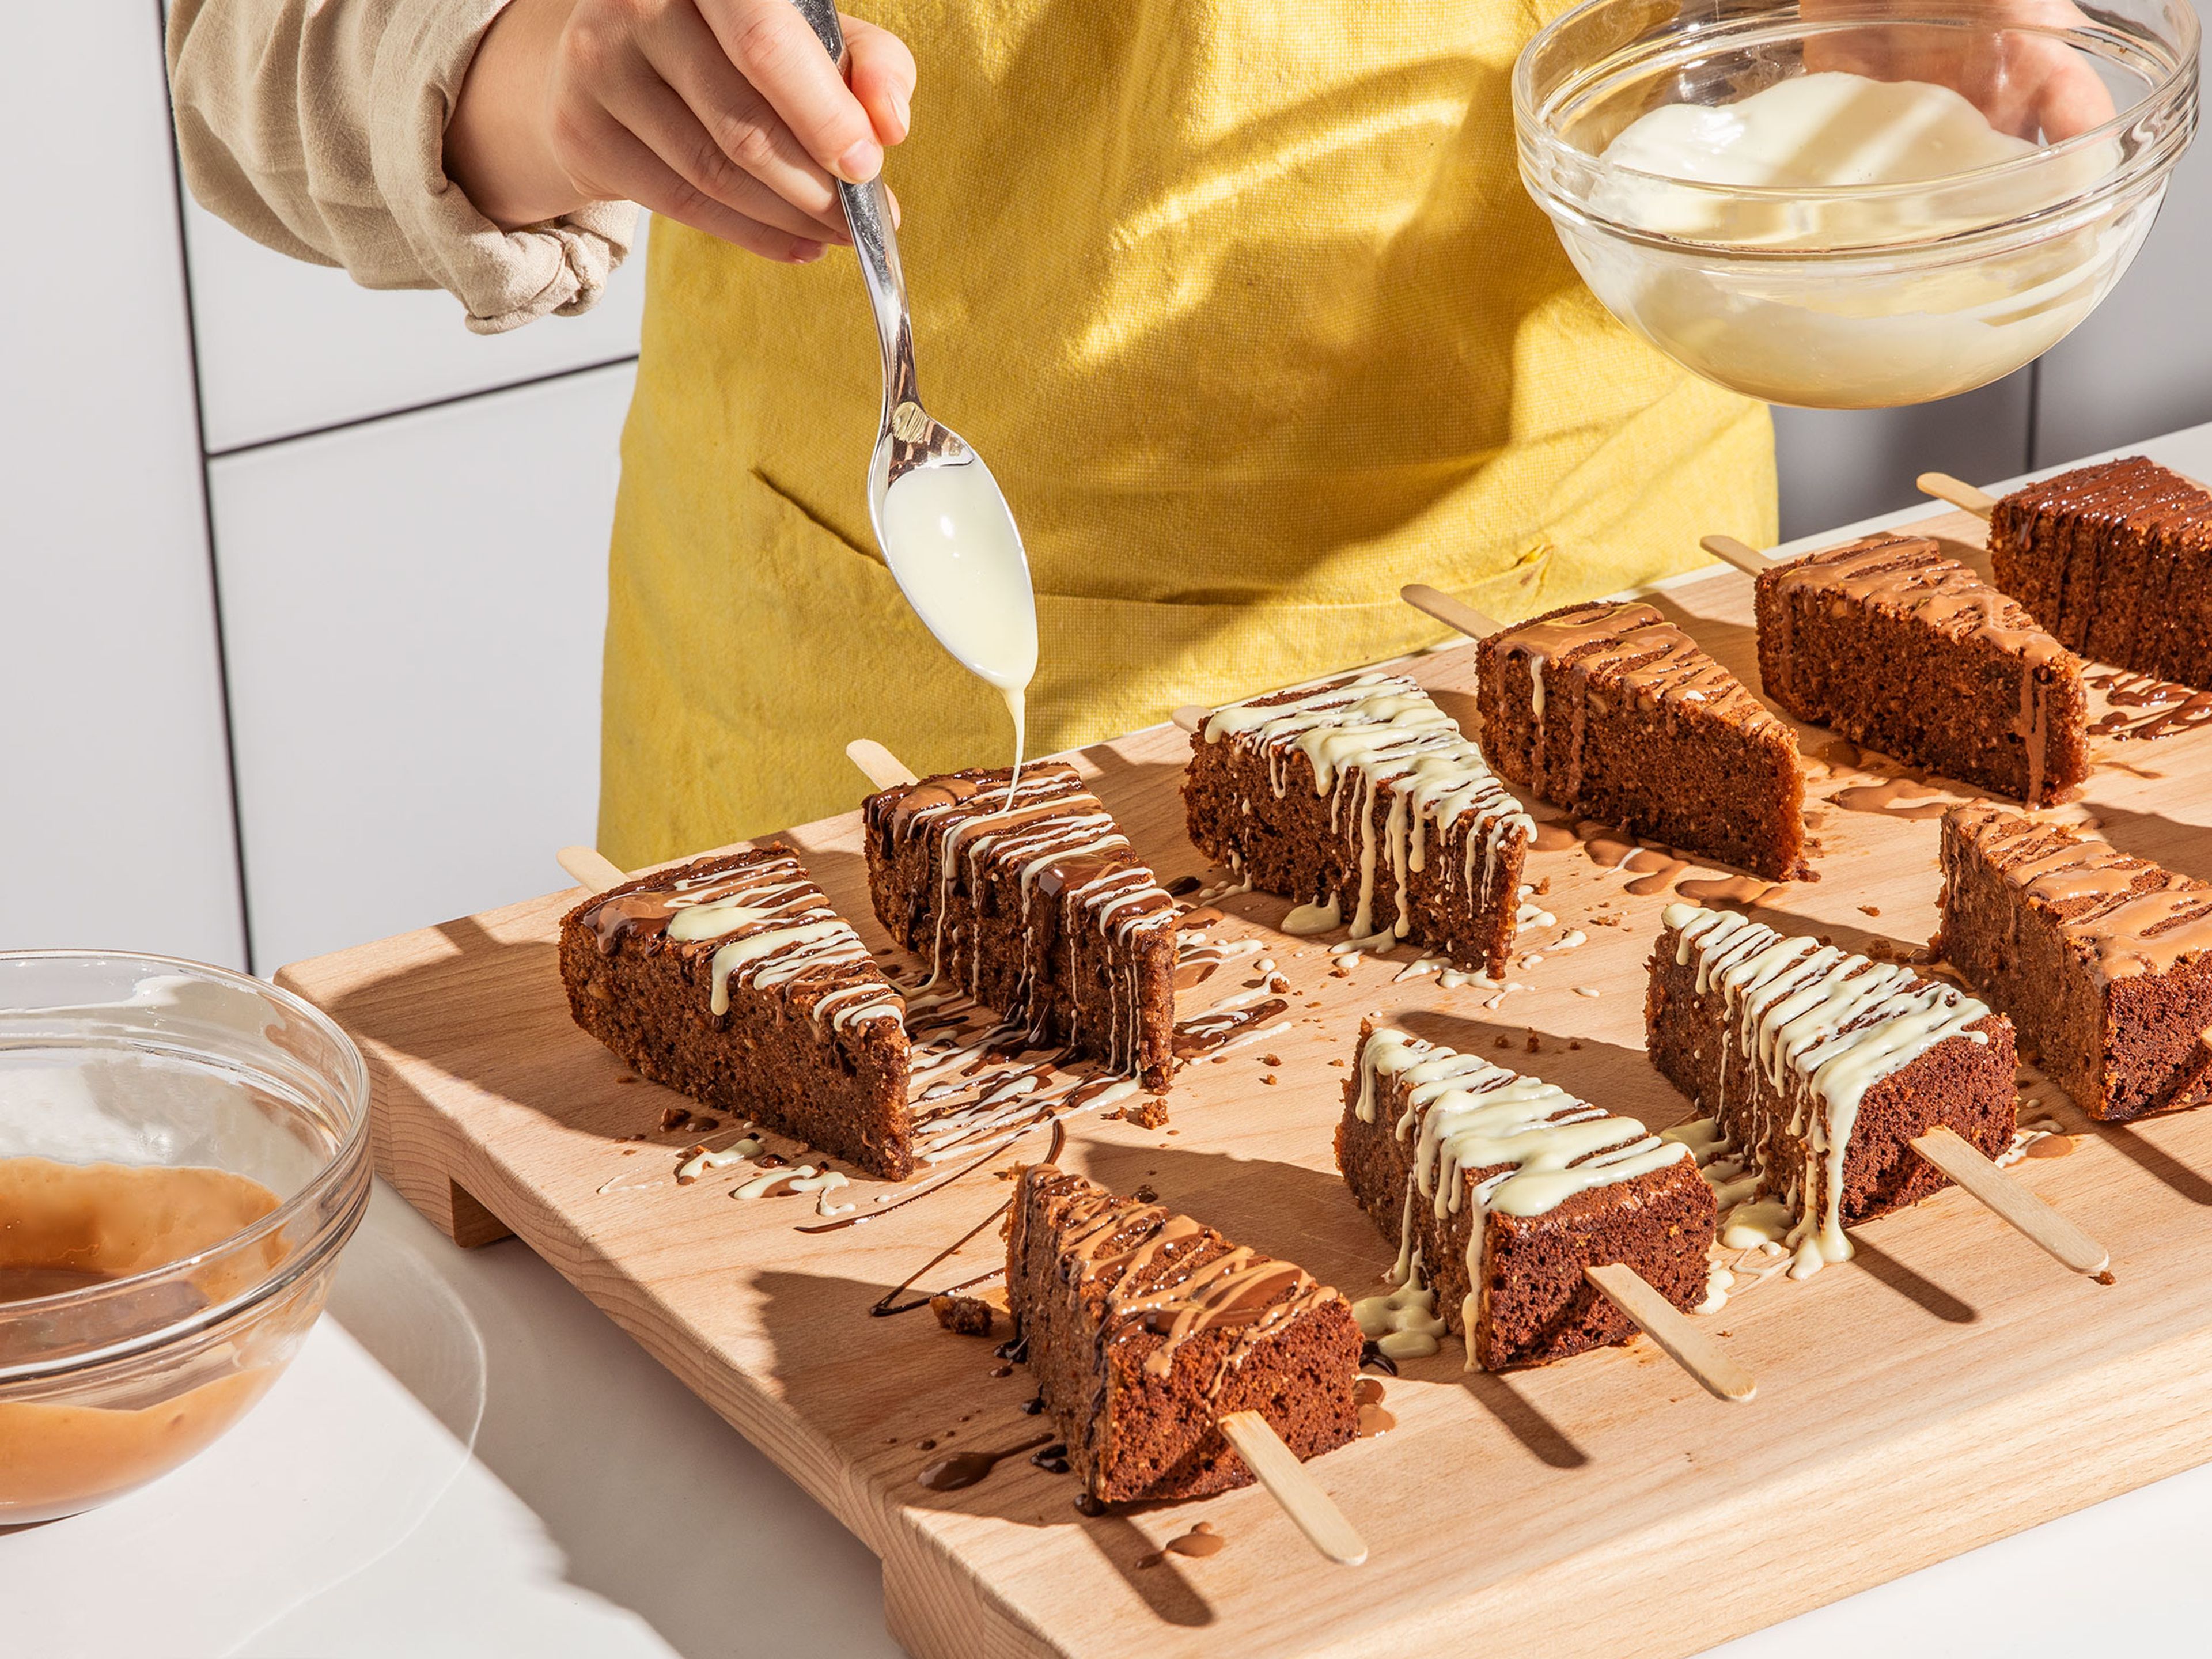 Den abgekühlten Kuchen in 12 gleich große Stücke schneiden und jeweils ⅓ eines Eisstiels in das Kuchenstück schieben. Mit allen Stücken wiederholen. Die Kuchen am Stiel nach Belieben mit den verschiedenen Schokoladen, gehackten Haselnüssen und z.B. Ferrero Küsschen oder getrockneten Blüten dekorieren. Der Kreativität sind keine Grenzen gesetzt. Anschließend für ca. 30 Min. in den Kühlschrank stellen, damit die Schokolade fest wird.